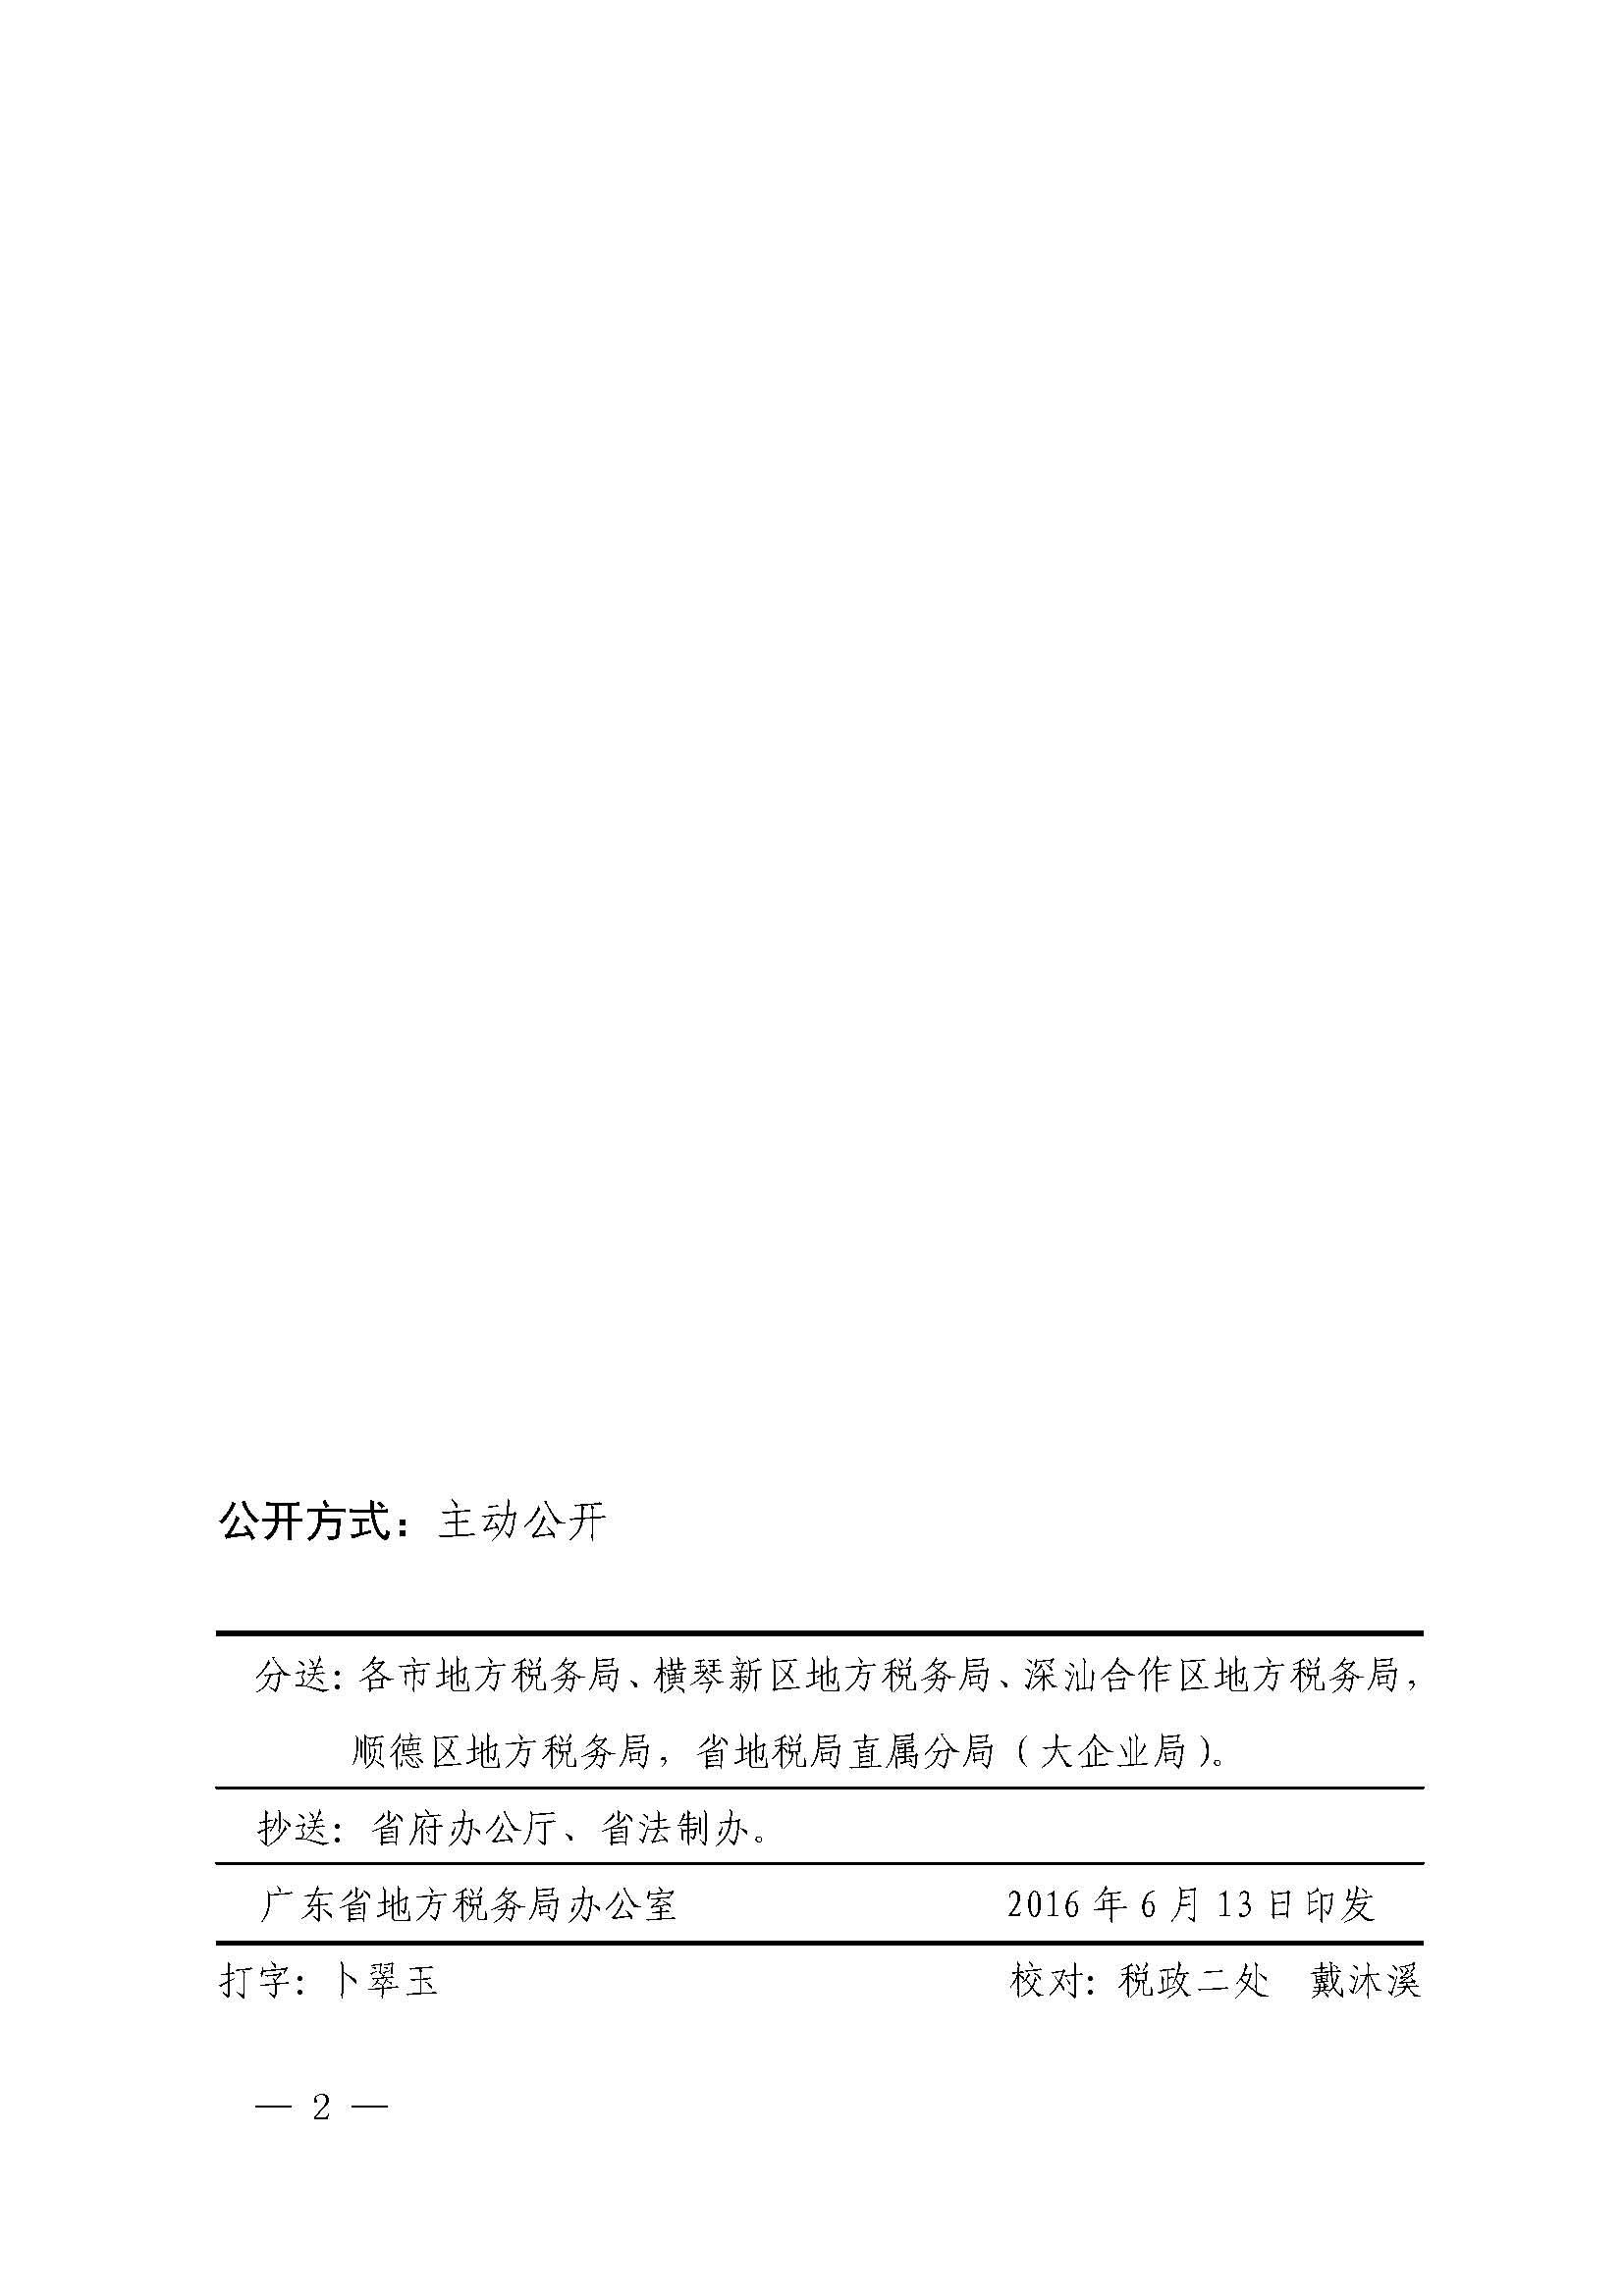 广东省地方税务局关于居民企业所得税预缴申报期限的公告_页面_2